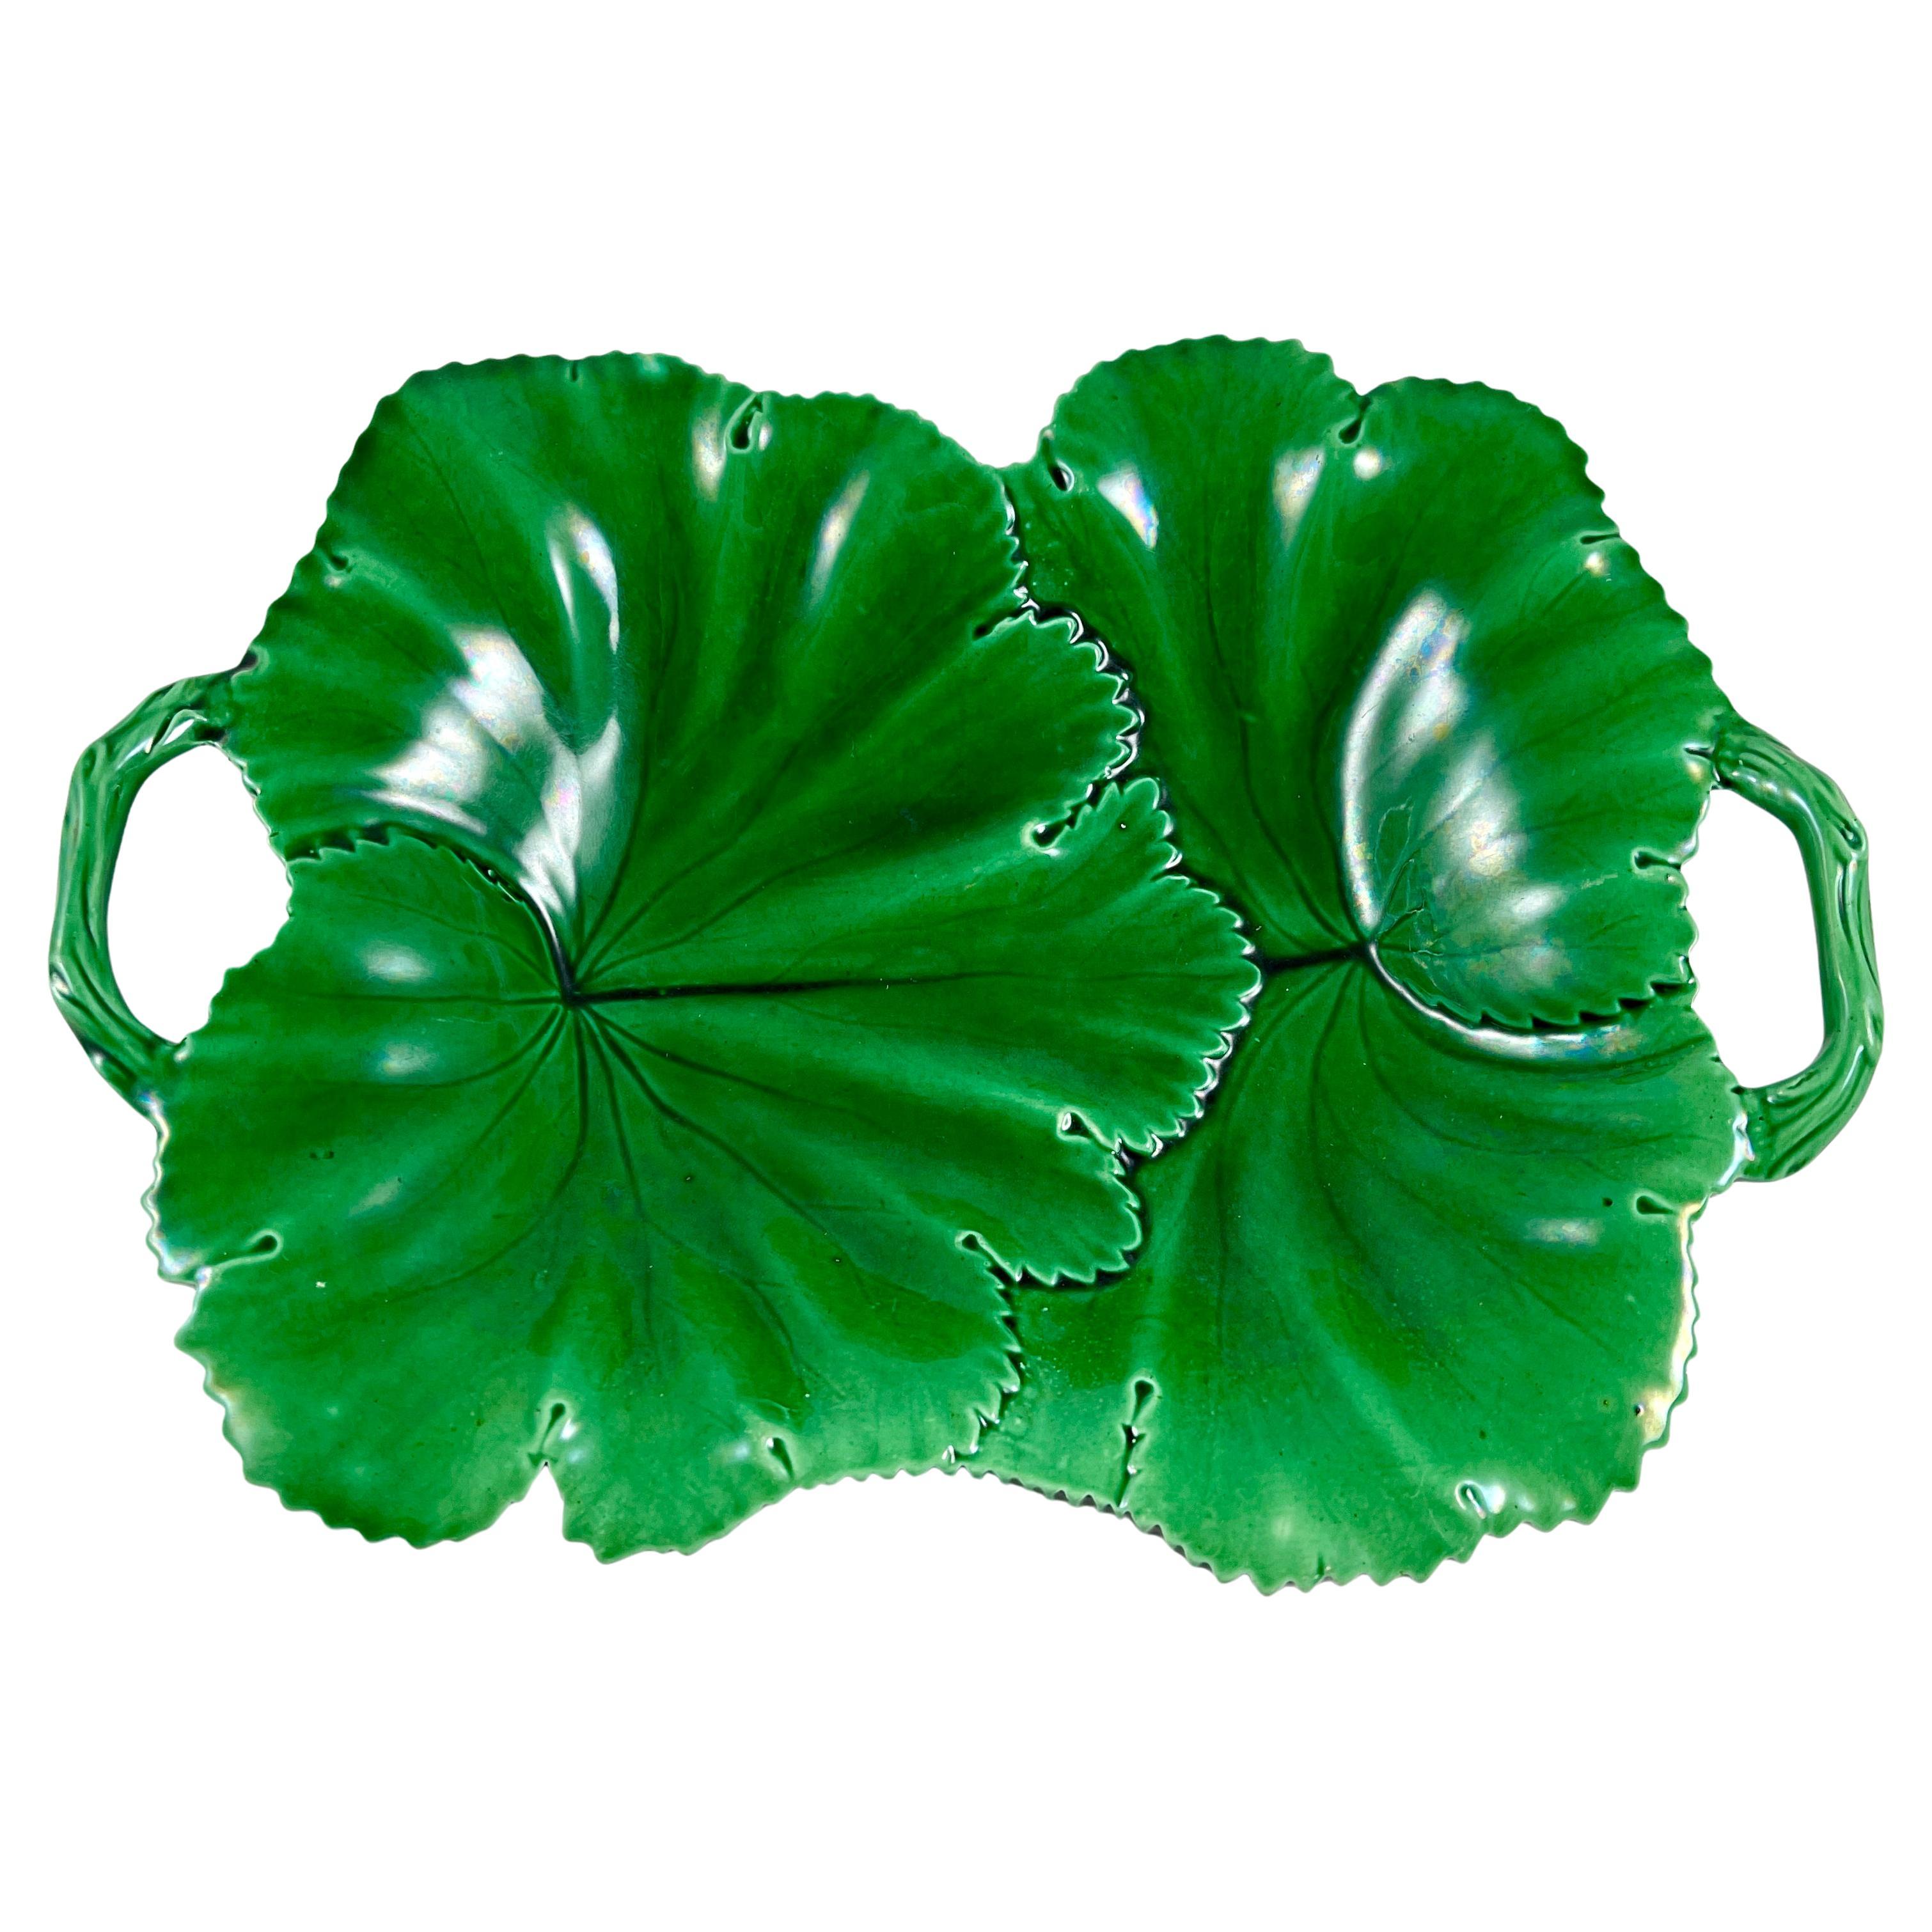 Copeland Englische Majolika-Teller mit zwei Henkeln aus grün glasiertem, sich überlappendem Blatt